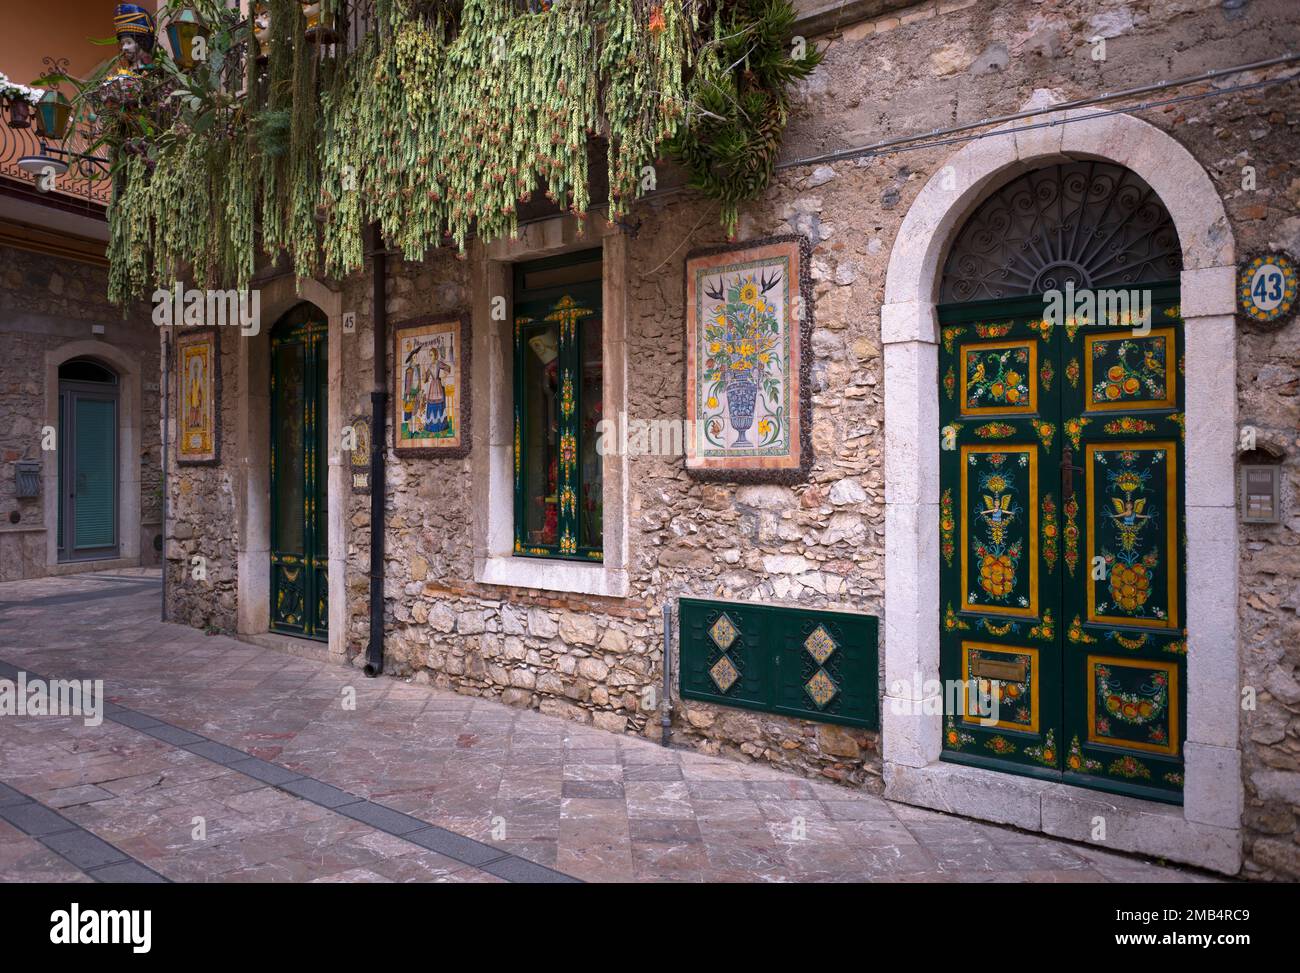 Porte peinte avec art, allée dans la vieille ville de Taormina, Sicile, Italie Banque D'Images